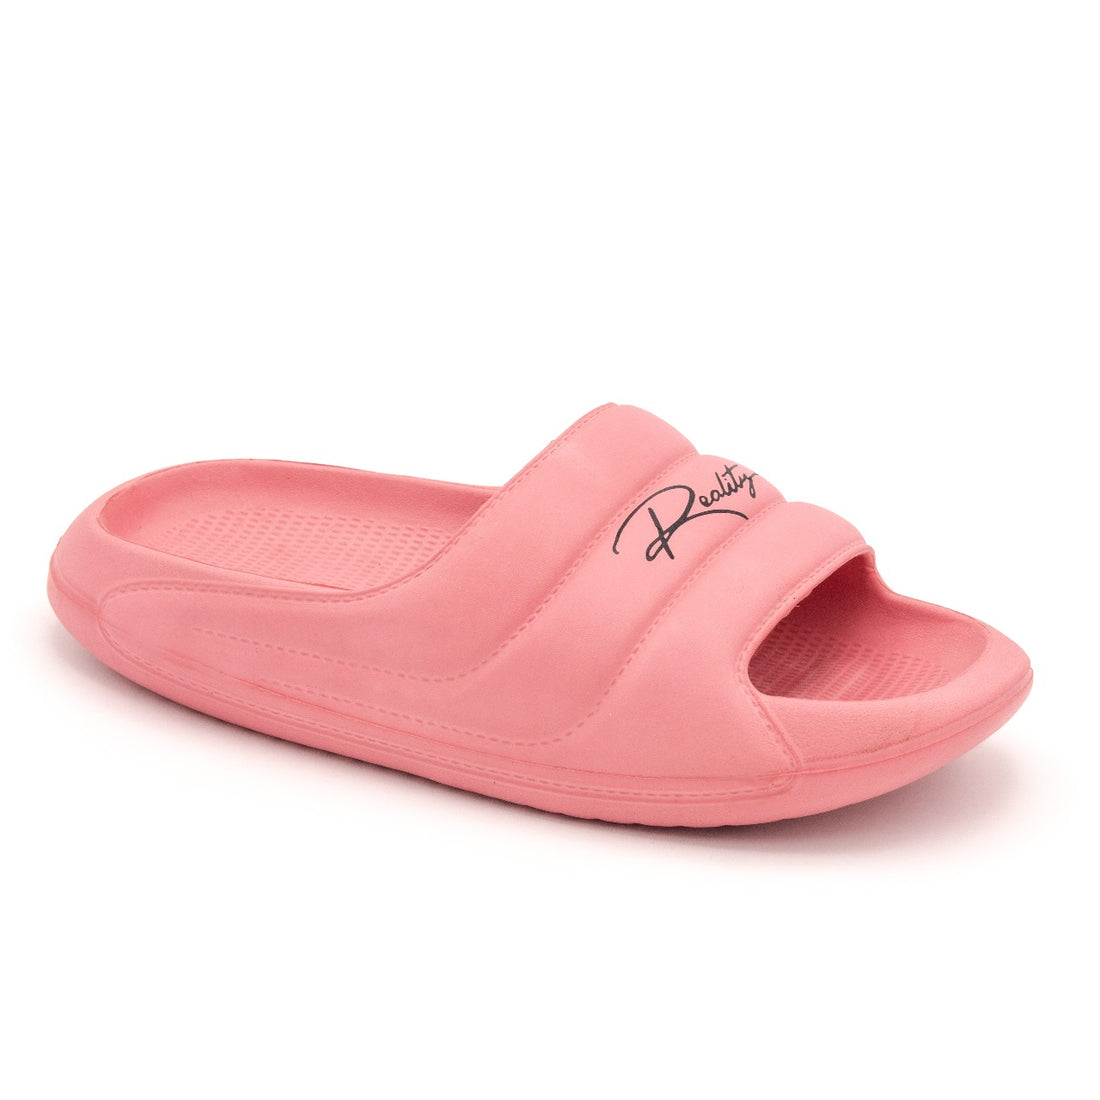 Relita comfy slipper